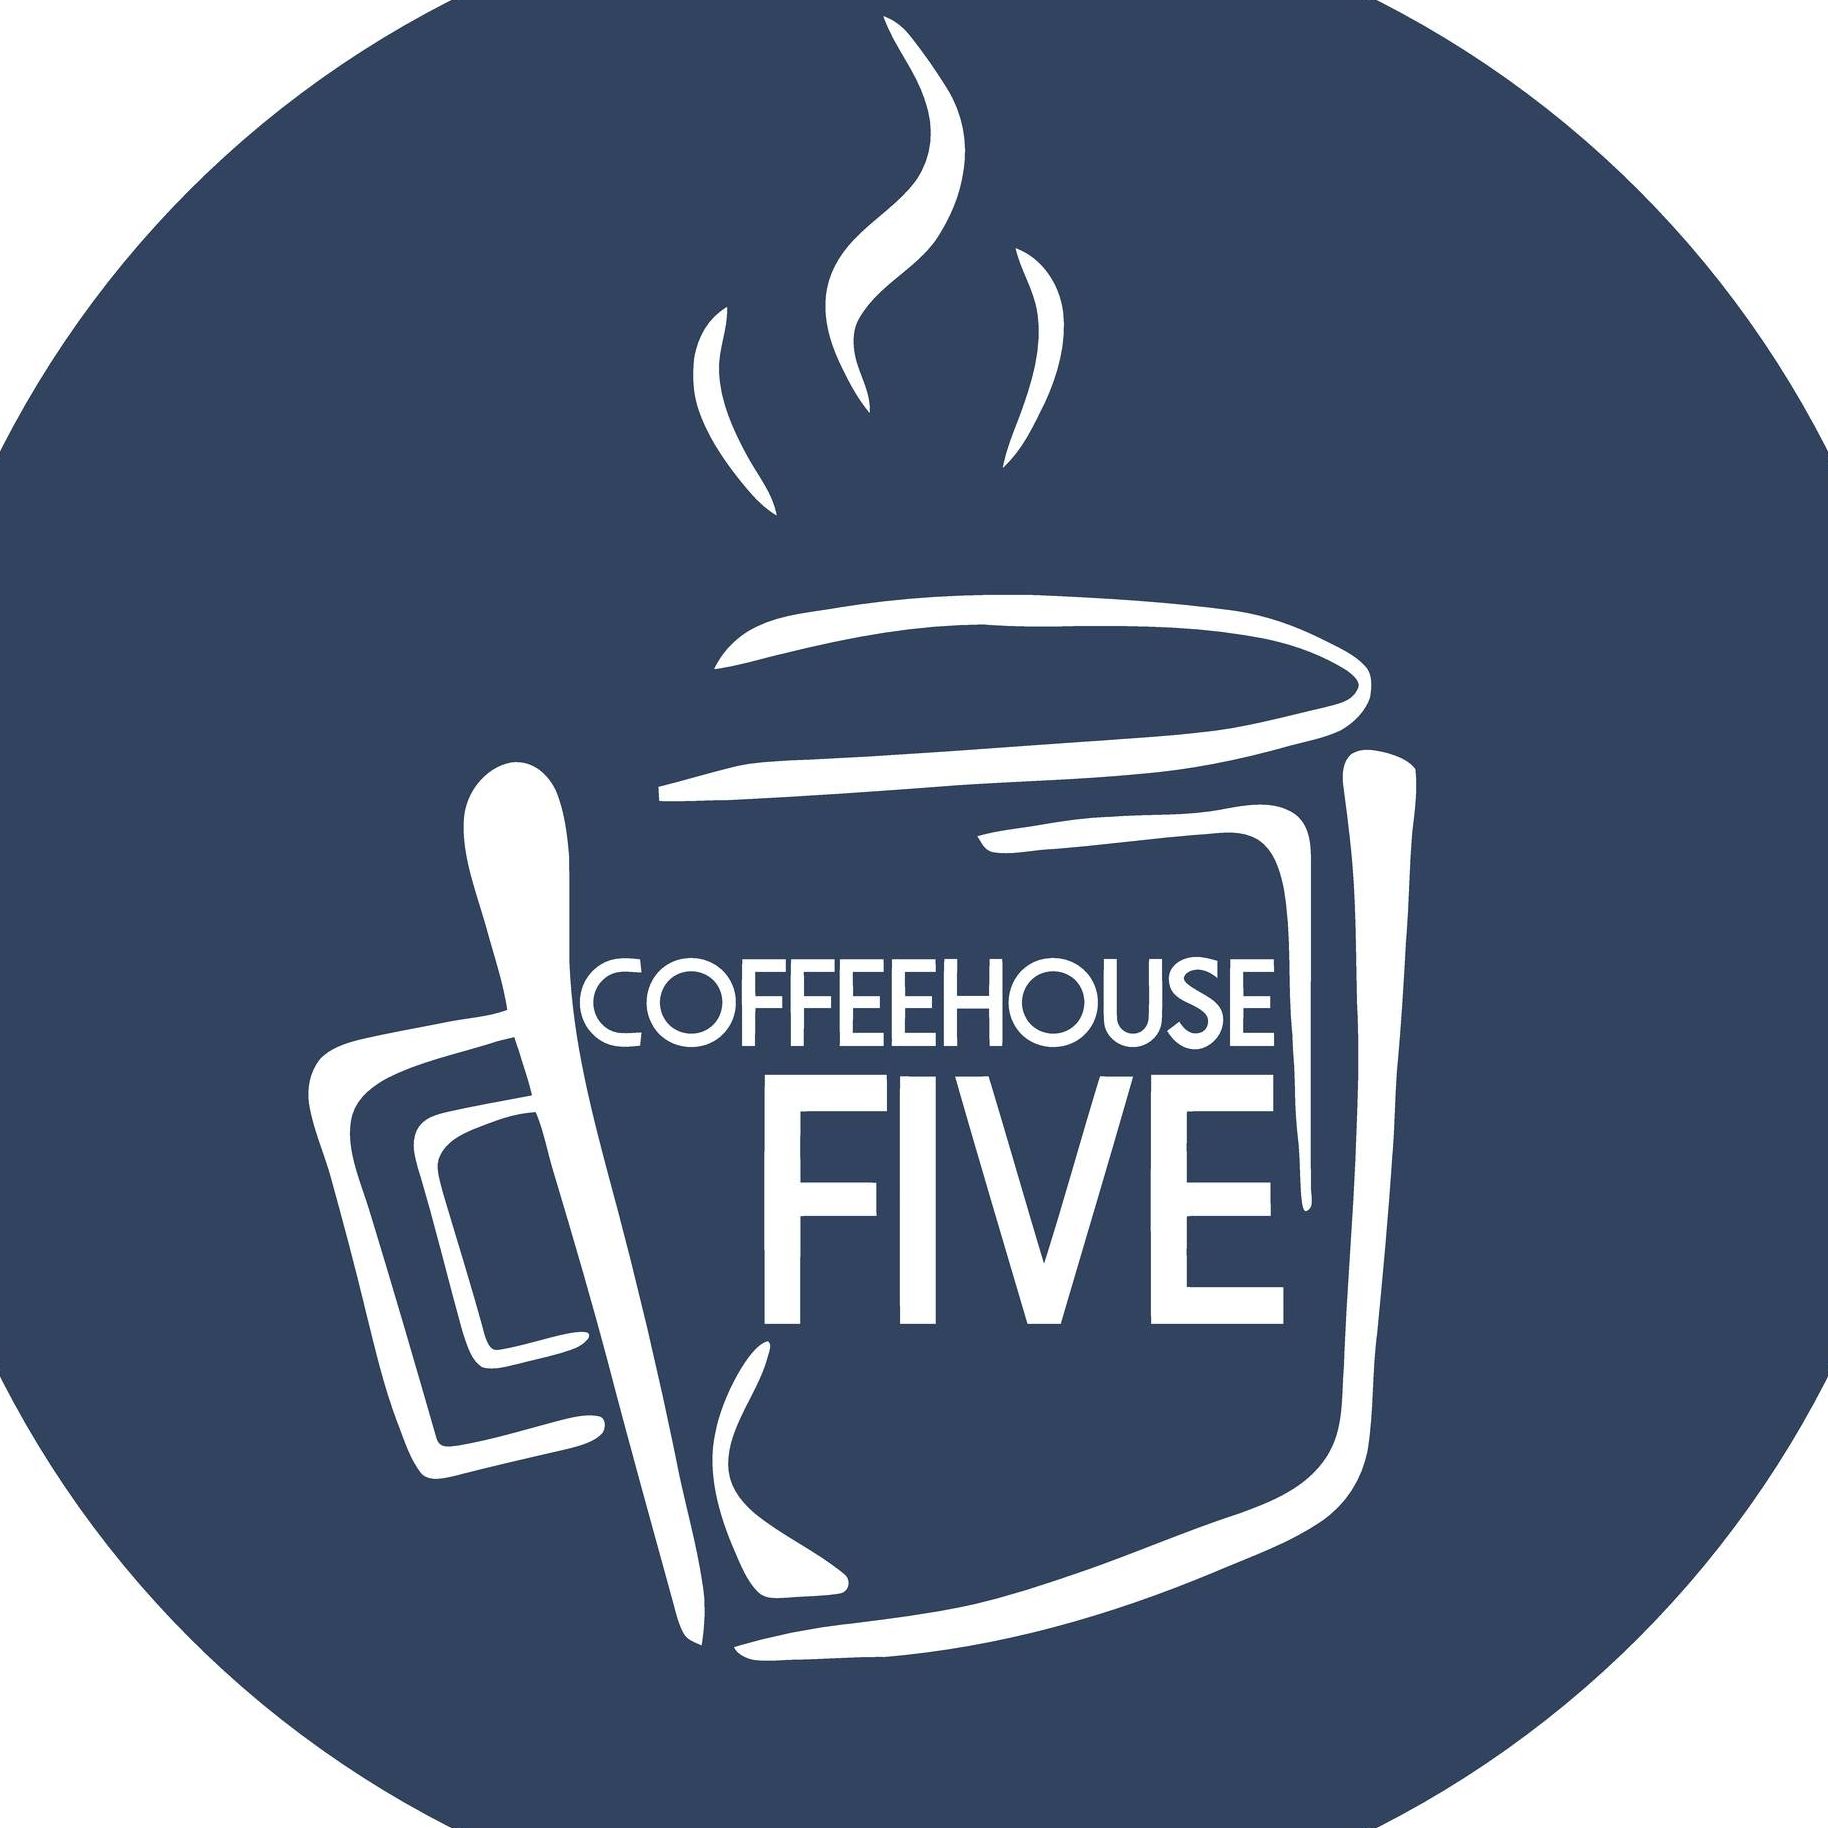 Coffeehouse Five Church